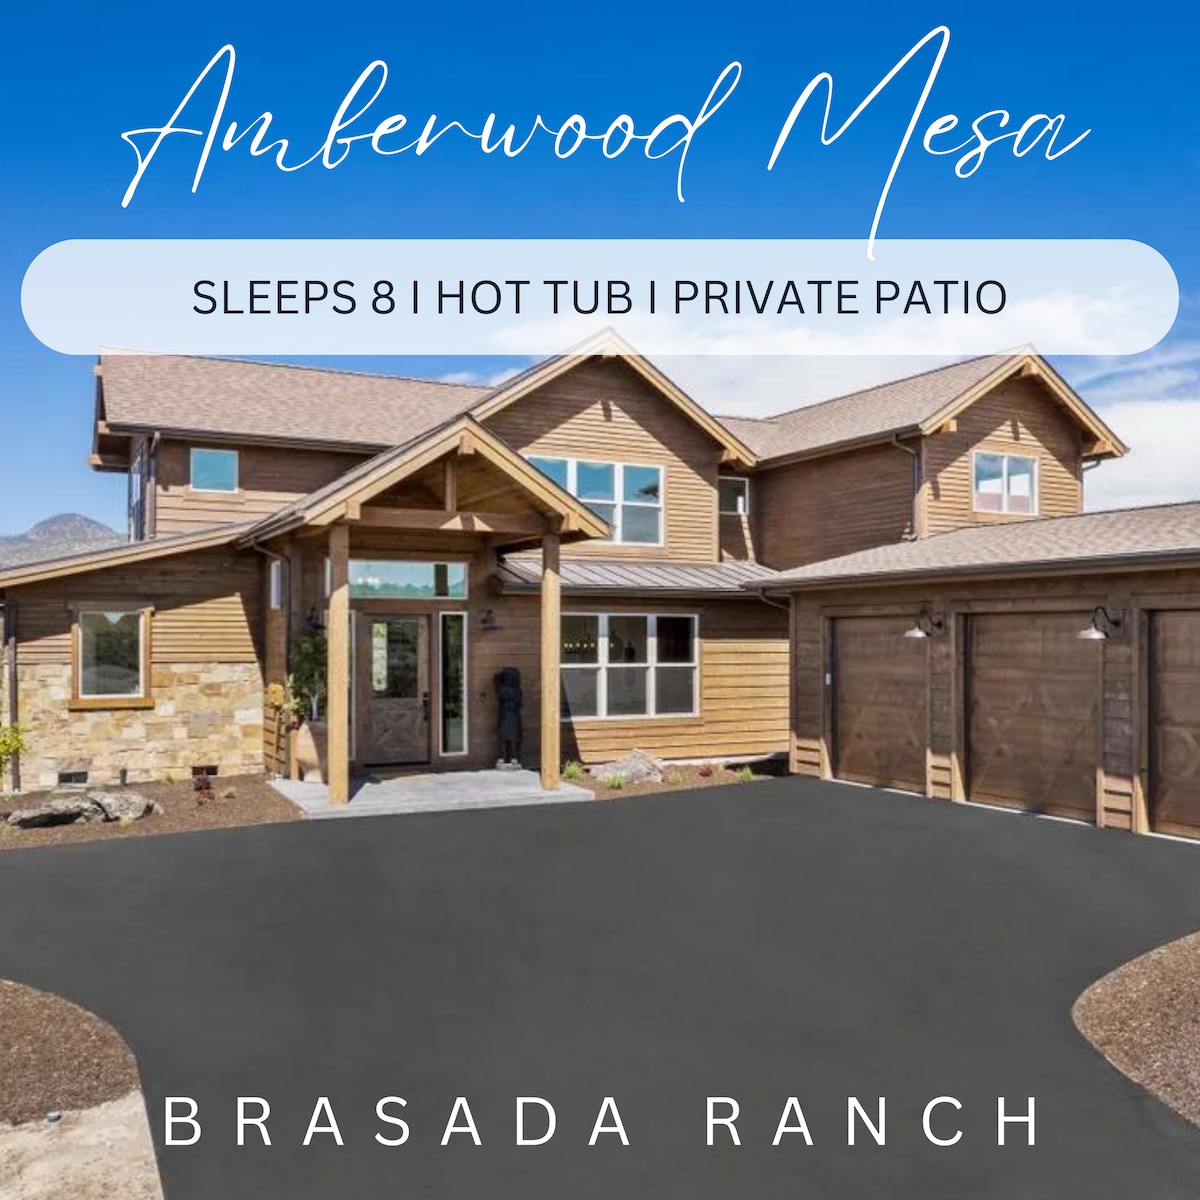 Amberwood Mesa Brasada Ranch | Hot Tub | Sleeps 8